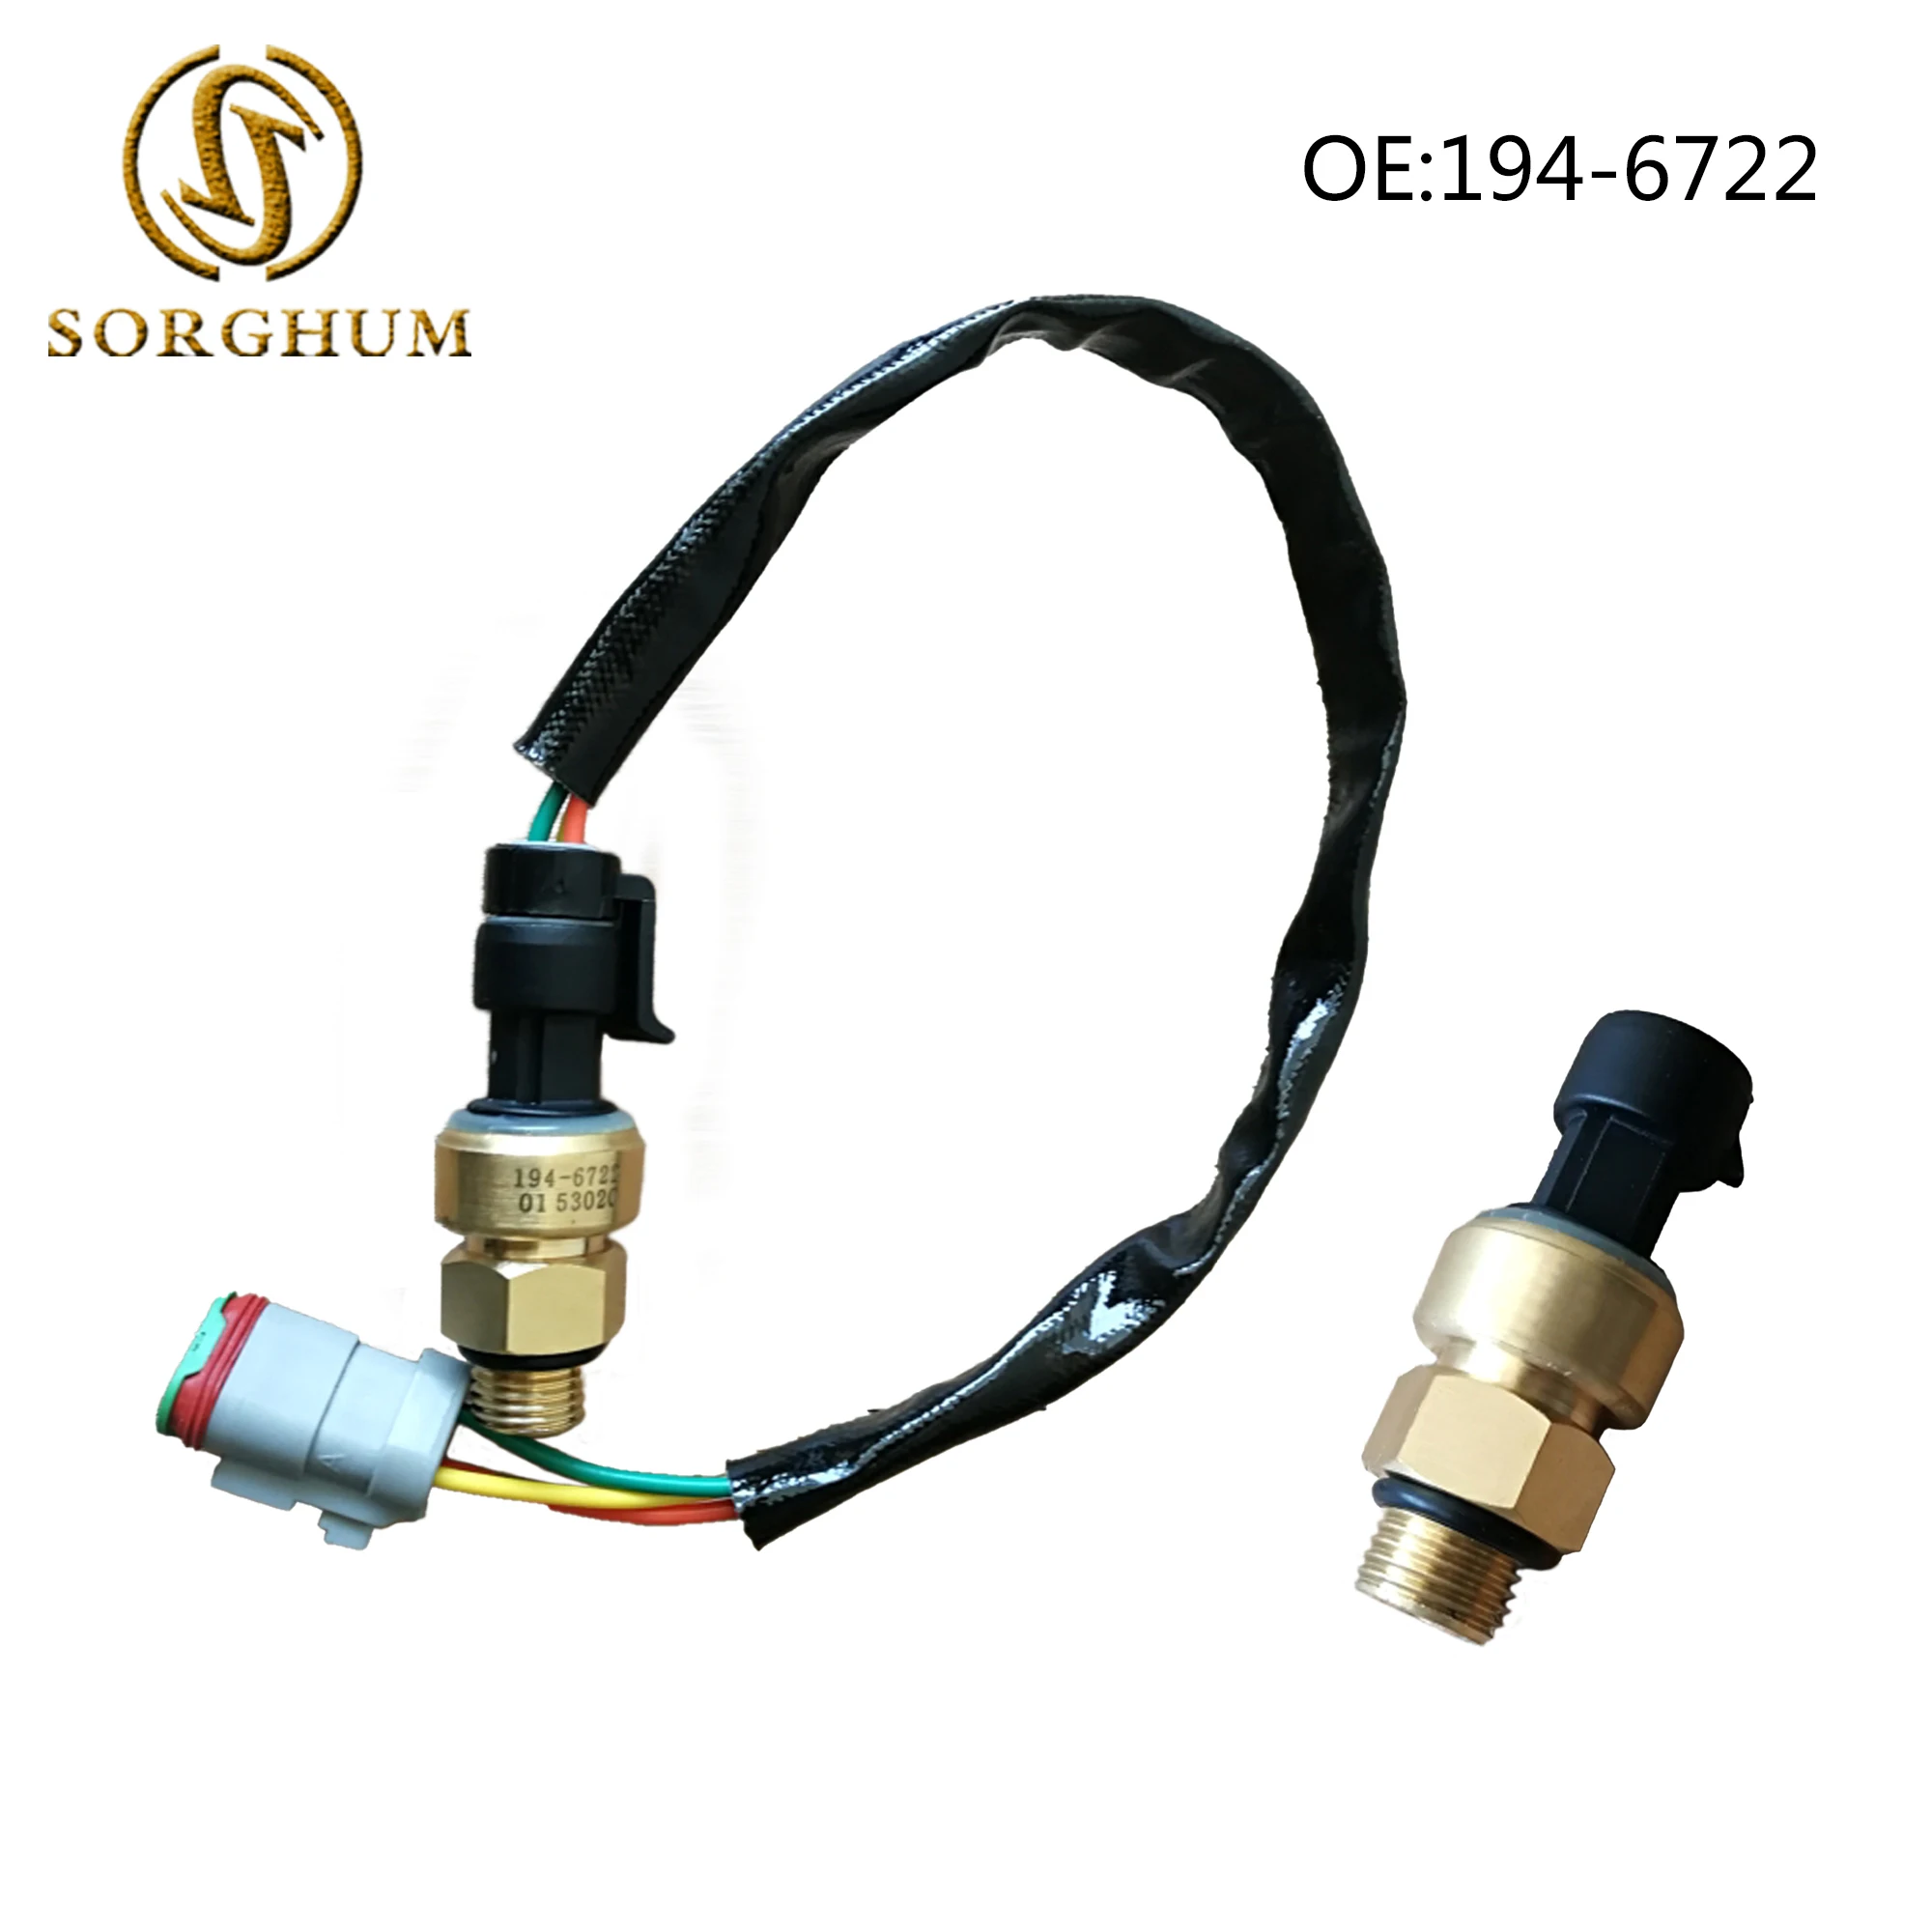 

Sorghum 194-6722 1946722 Excavator Engine Oil Pressure Atmospheric Sensor Switch For Caterpillar Cat Dozer C12 C13 C15 C27 3406E